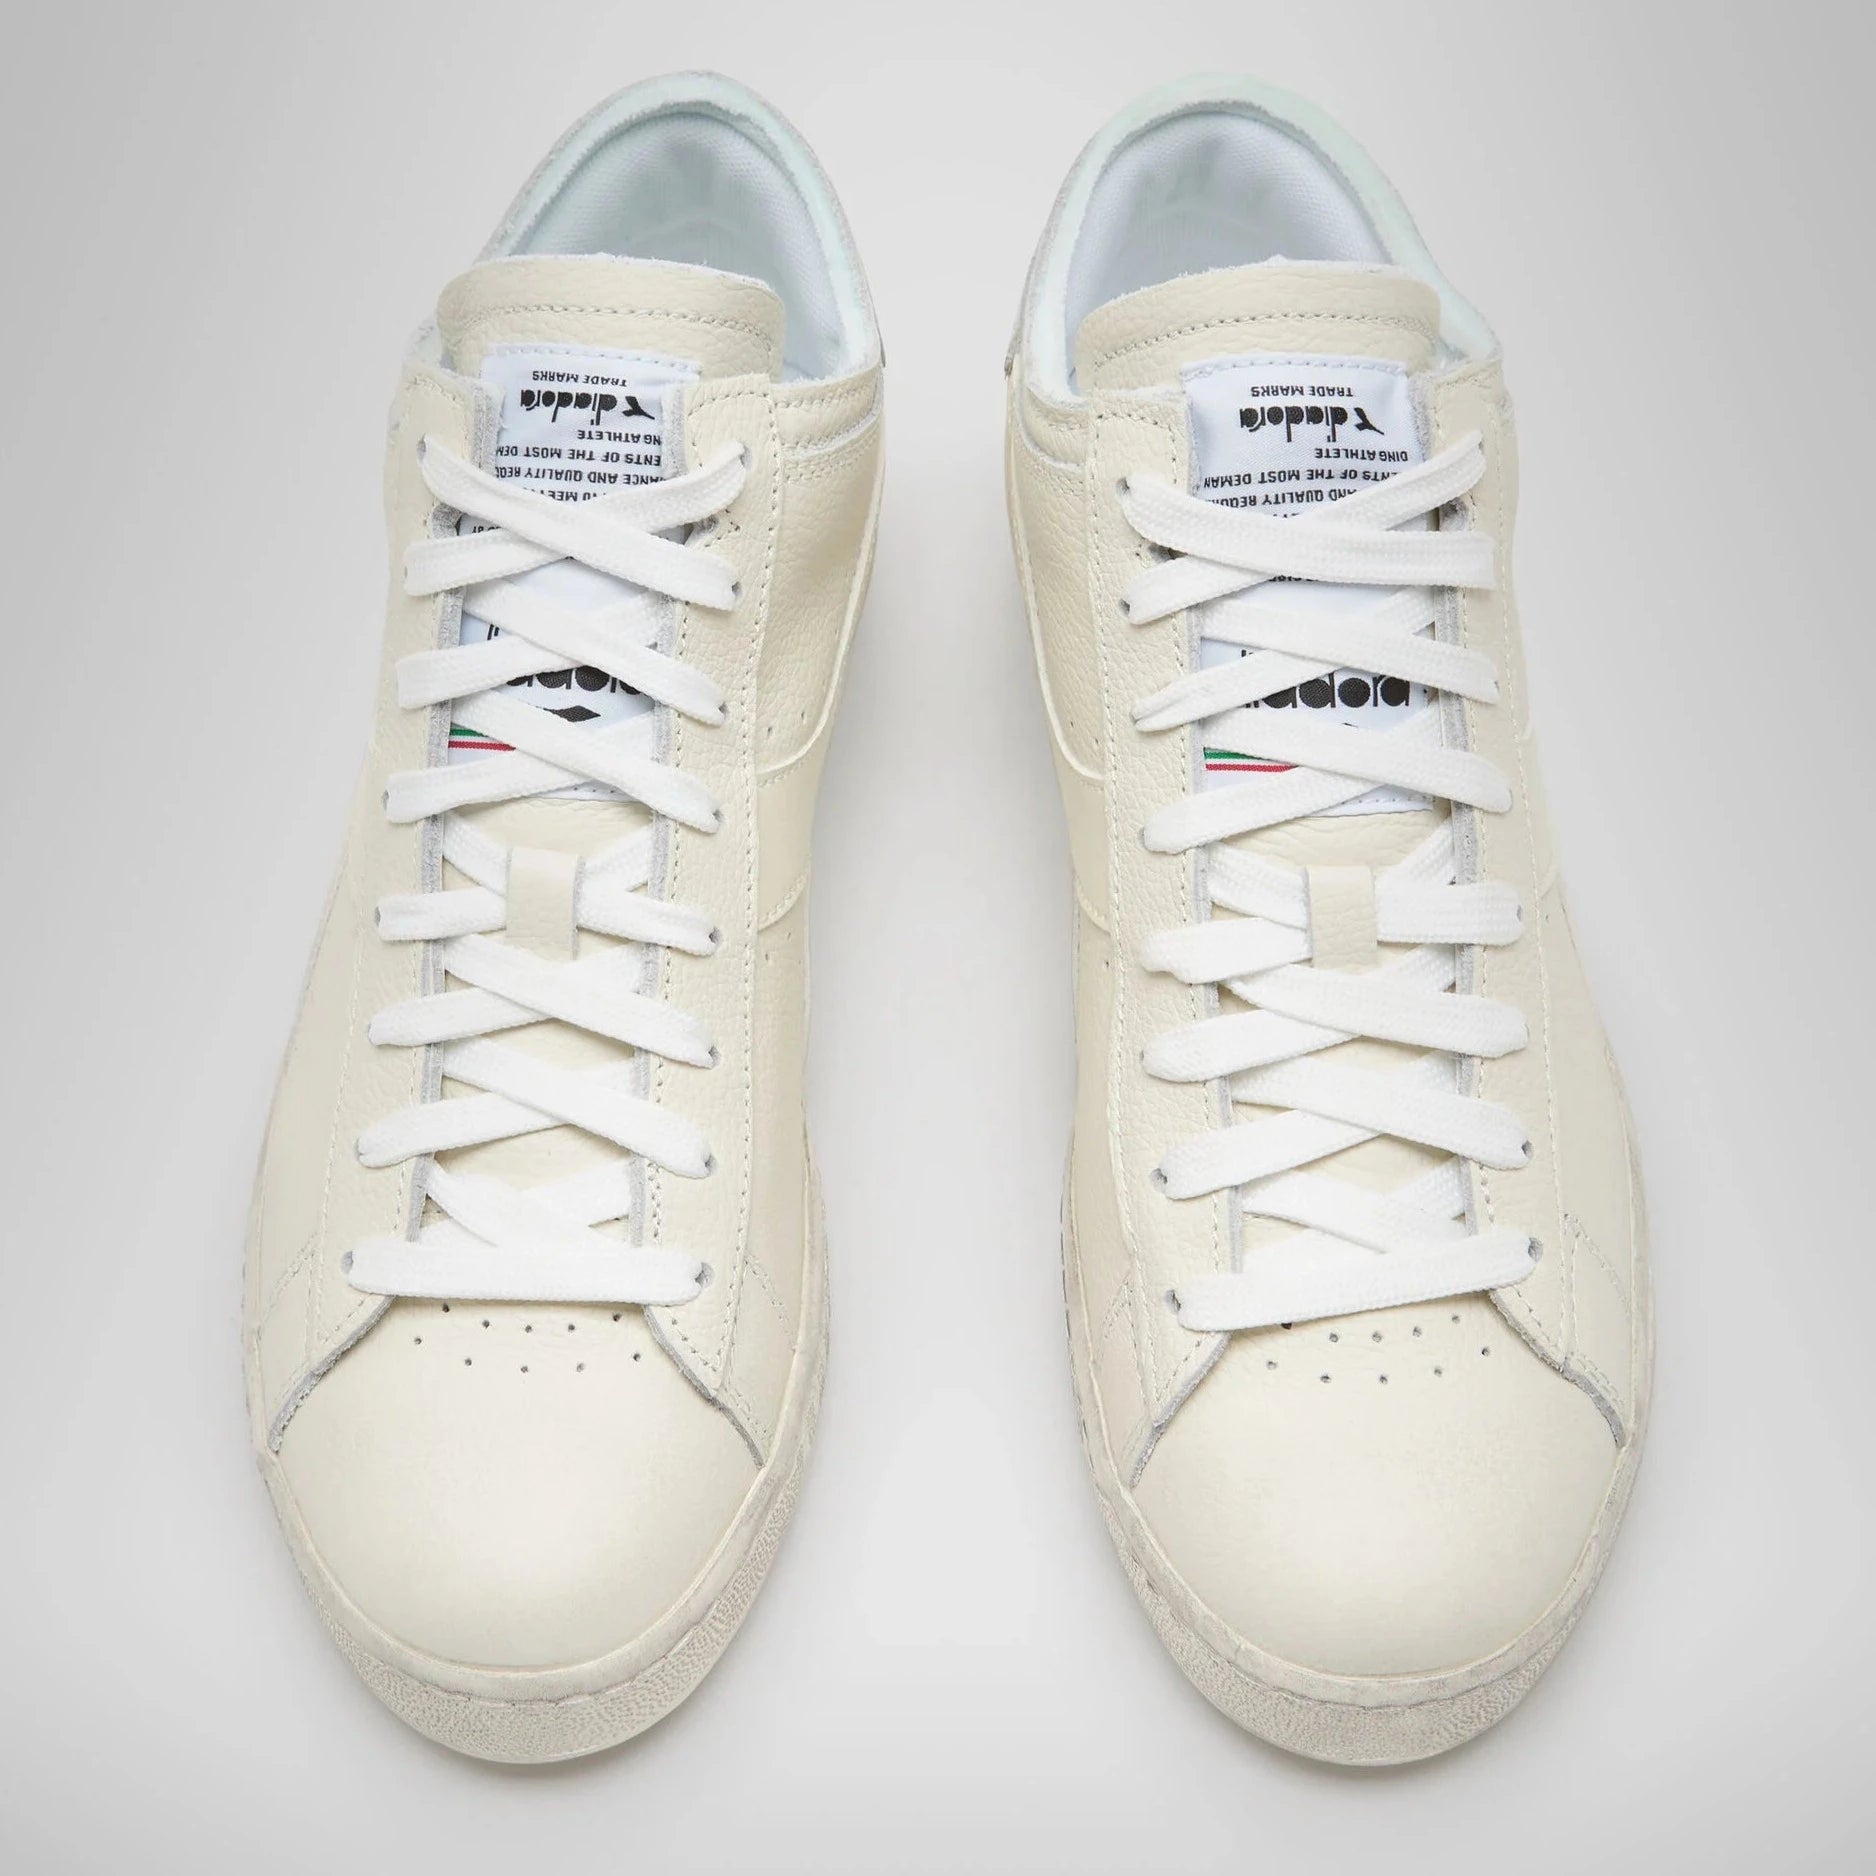 Sneakers De La Marca Diadora Para Unisex Modelo Game L Waxed Row Cut En Color Blanco